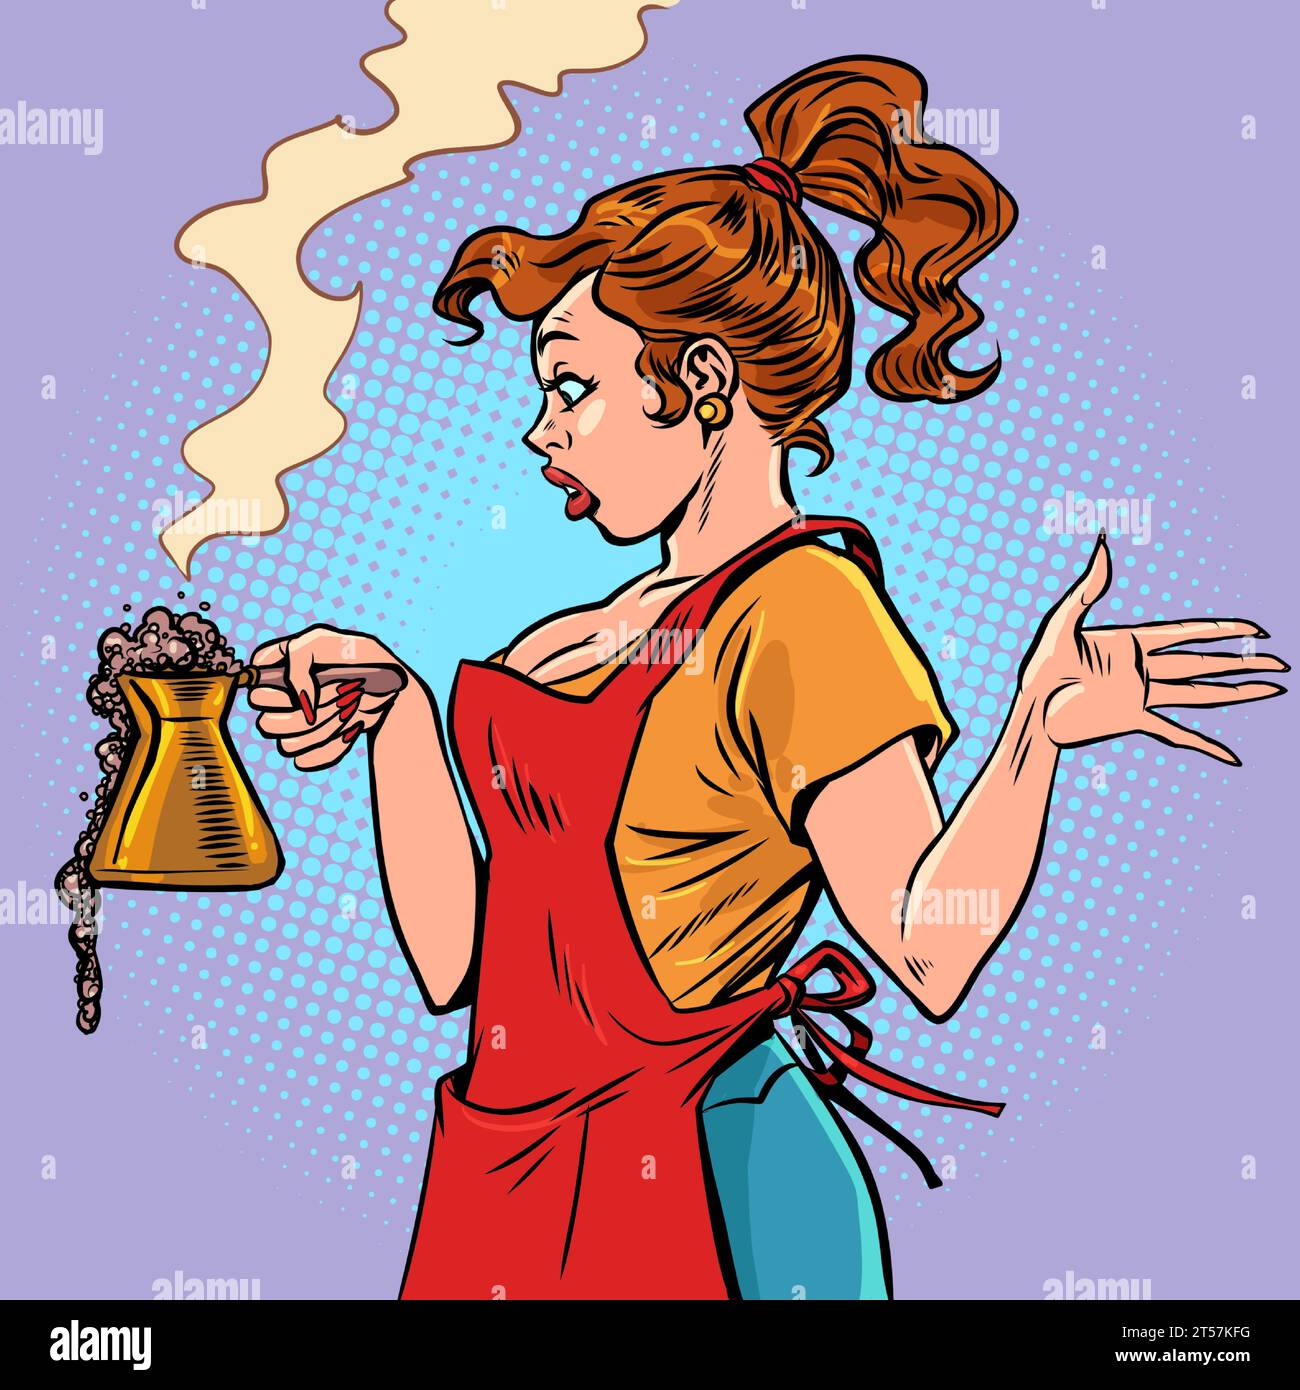 Der Fastfood-Barista ist verwirrt über das, was passiert. Ein Mädchen in einer Schürze bereitet Kaffee zu. Der Kaffee ging während des Brühens aus. Comic-Comic-Pop-Art Re Stock Vektor